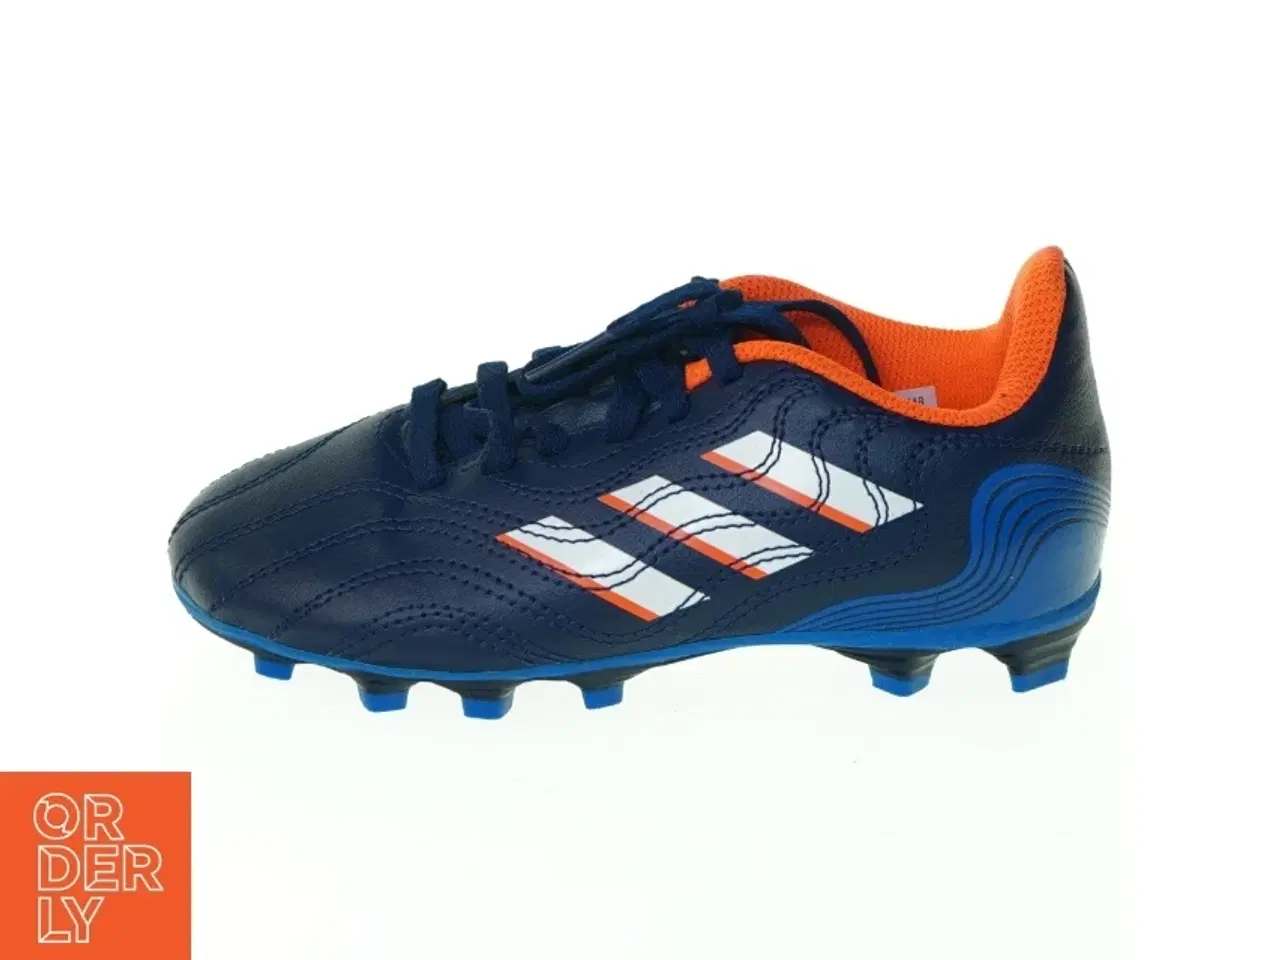 Billede 1 - Fodboldstøvler fra Adidas (str. 31)